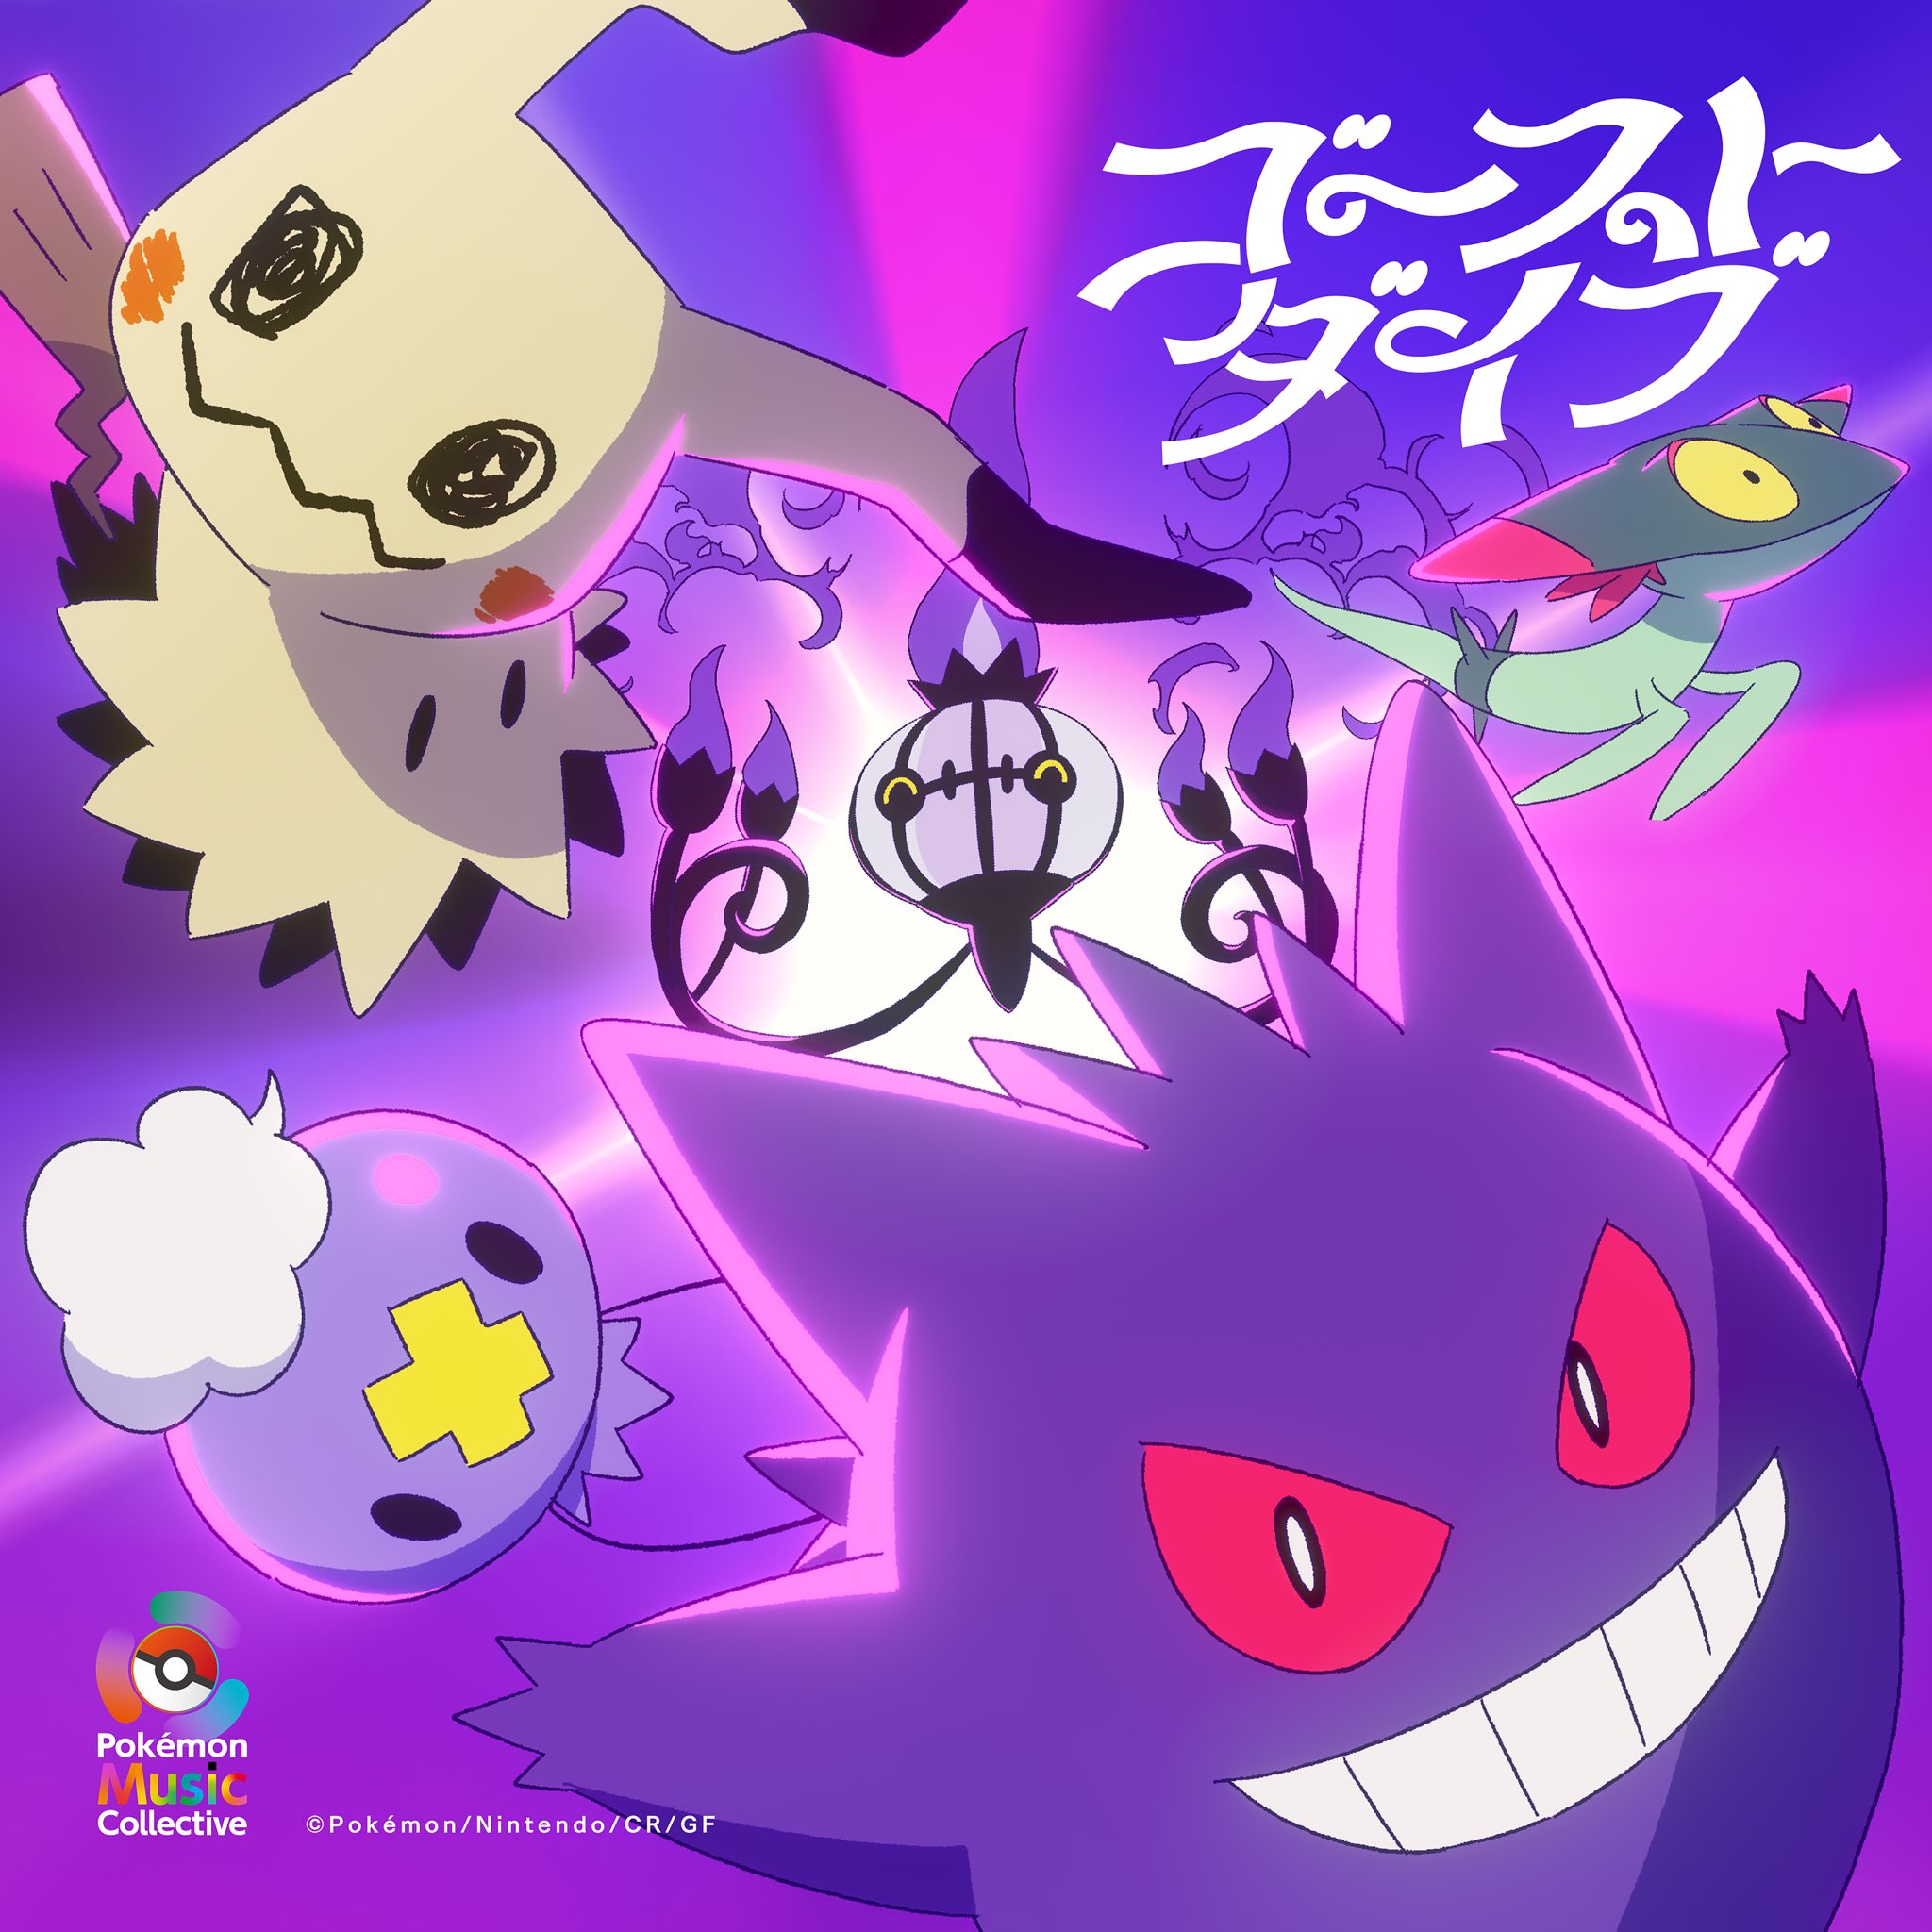 Released - Pokemon Purple